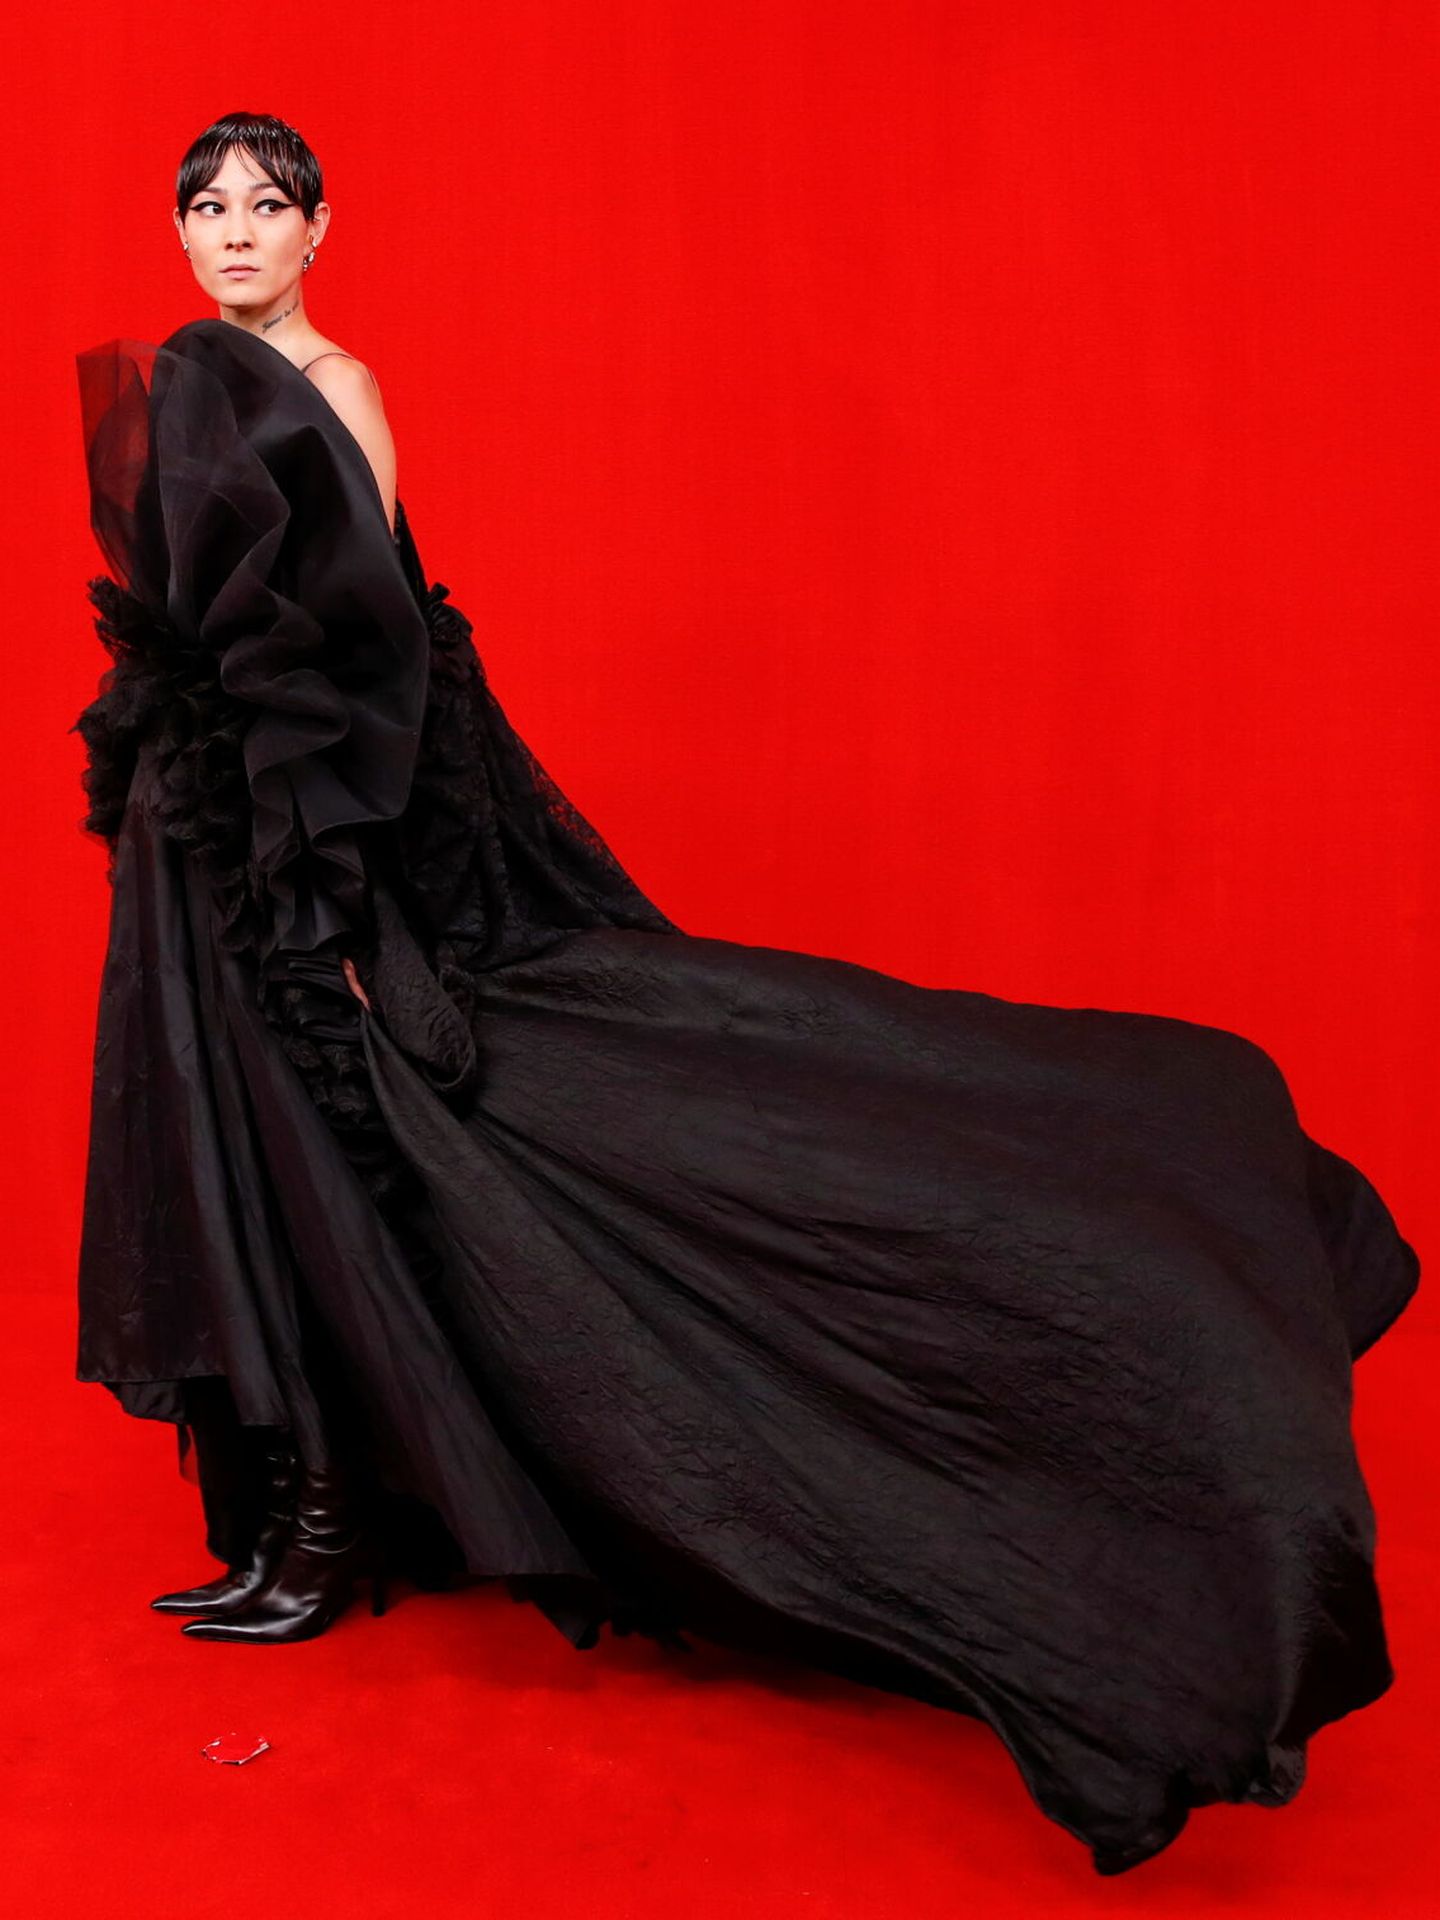 Modelo de la colección Red Carpet Premiere de Balenciaga. (Reuters)